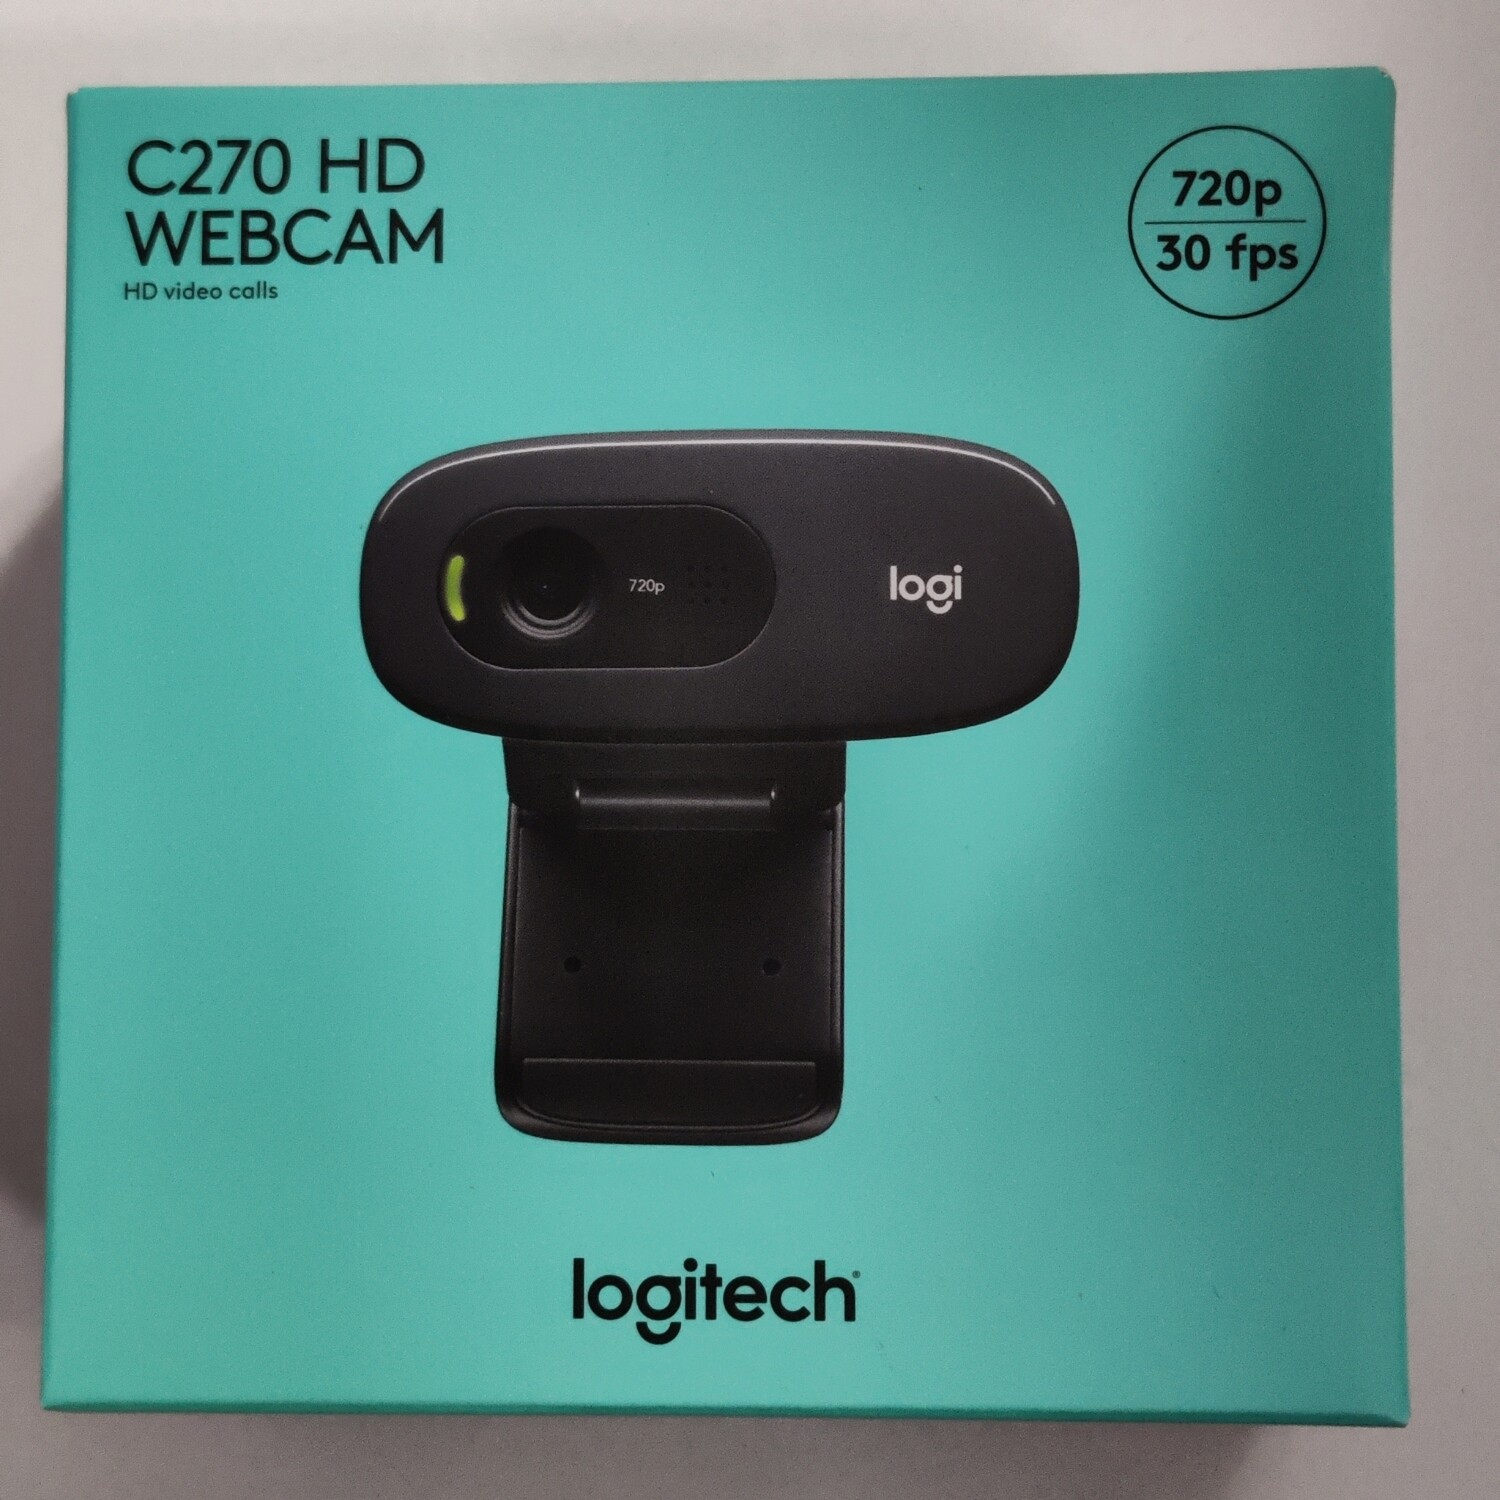 Logitech C270 HD Webcam, 720p/30fps - Rs.1550